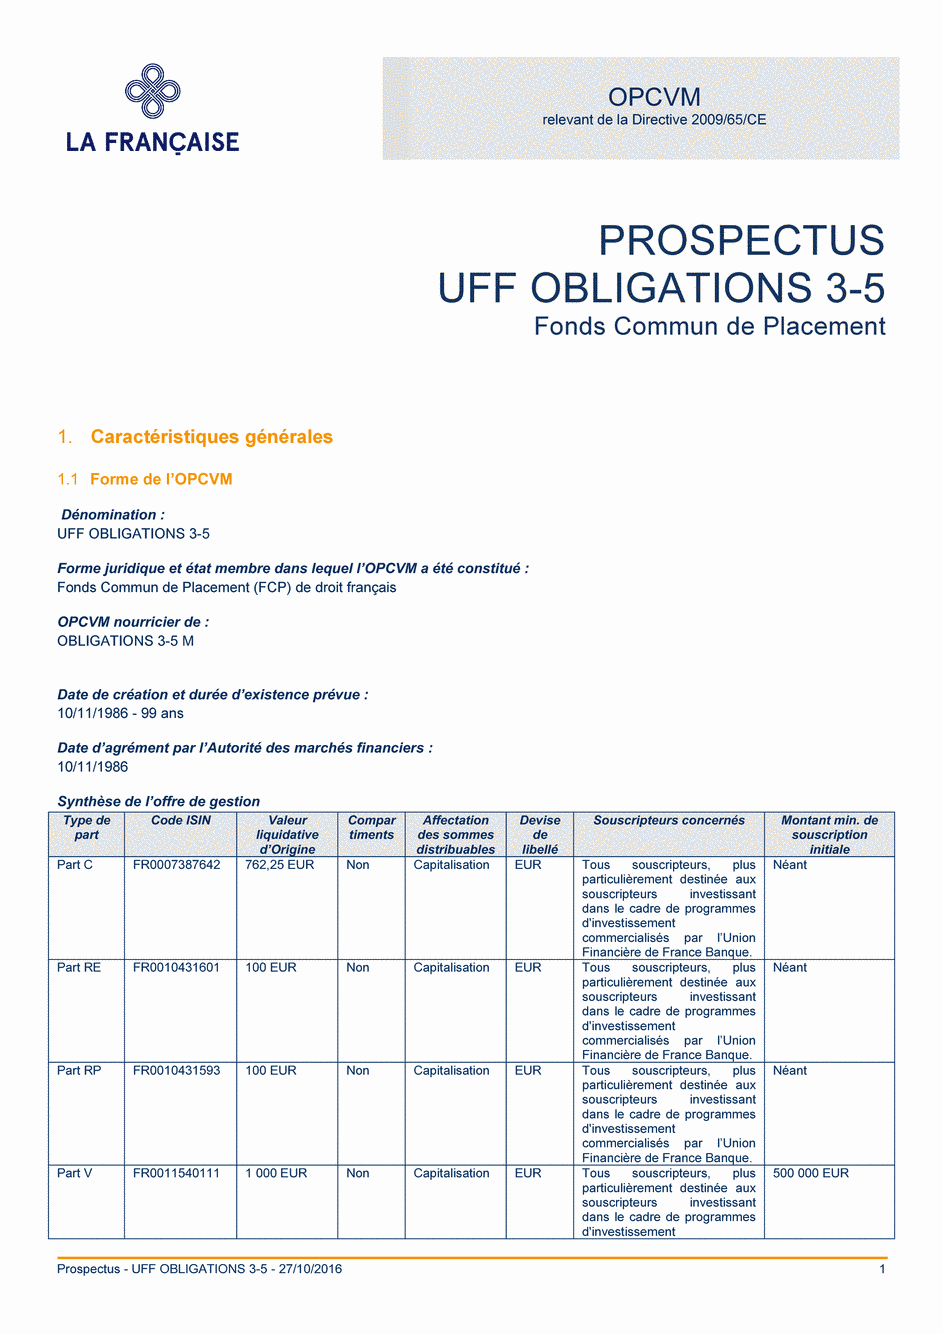 Prospectus UFF Obligations 3-5 (Part V) - 27/10/2016 - Français